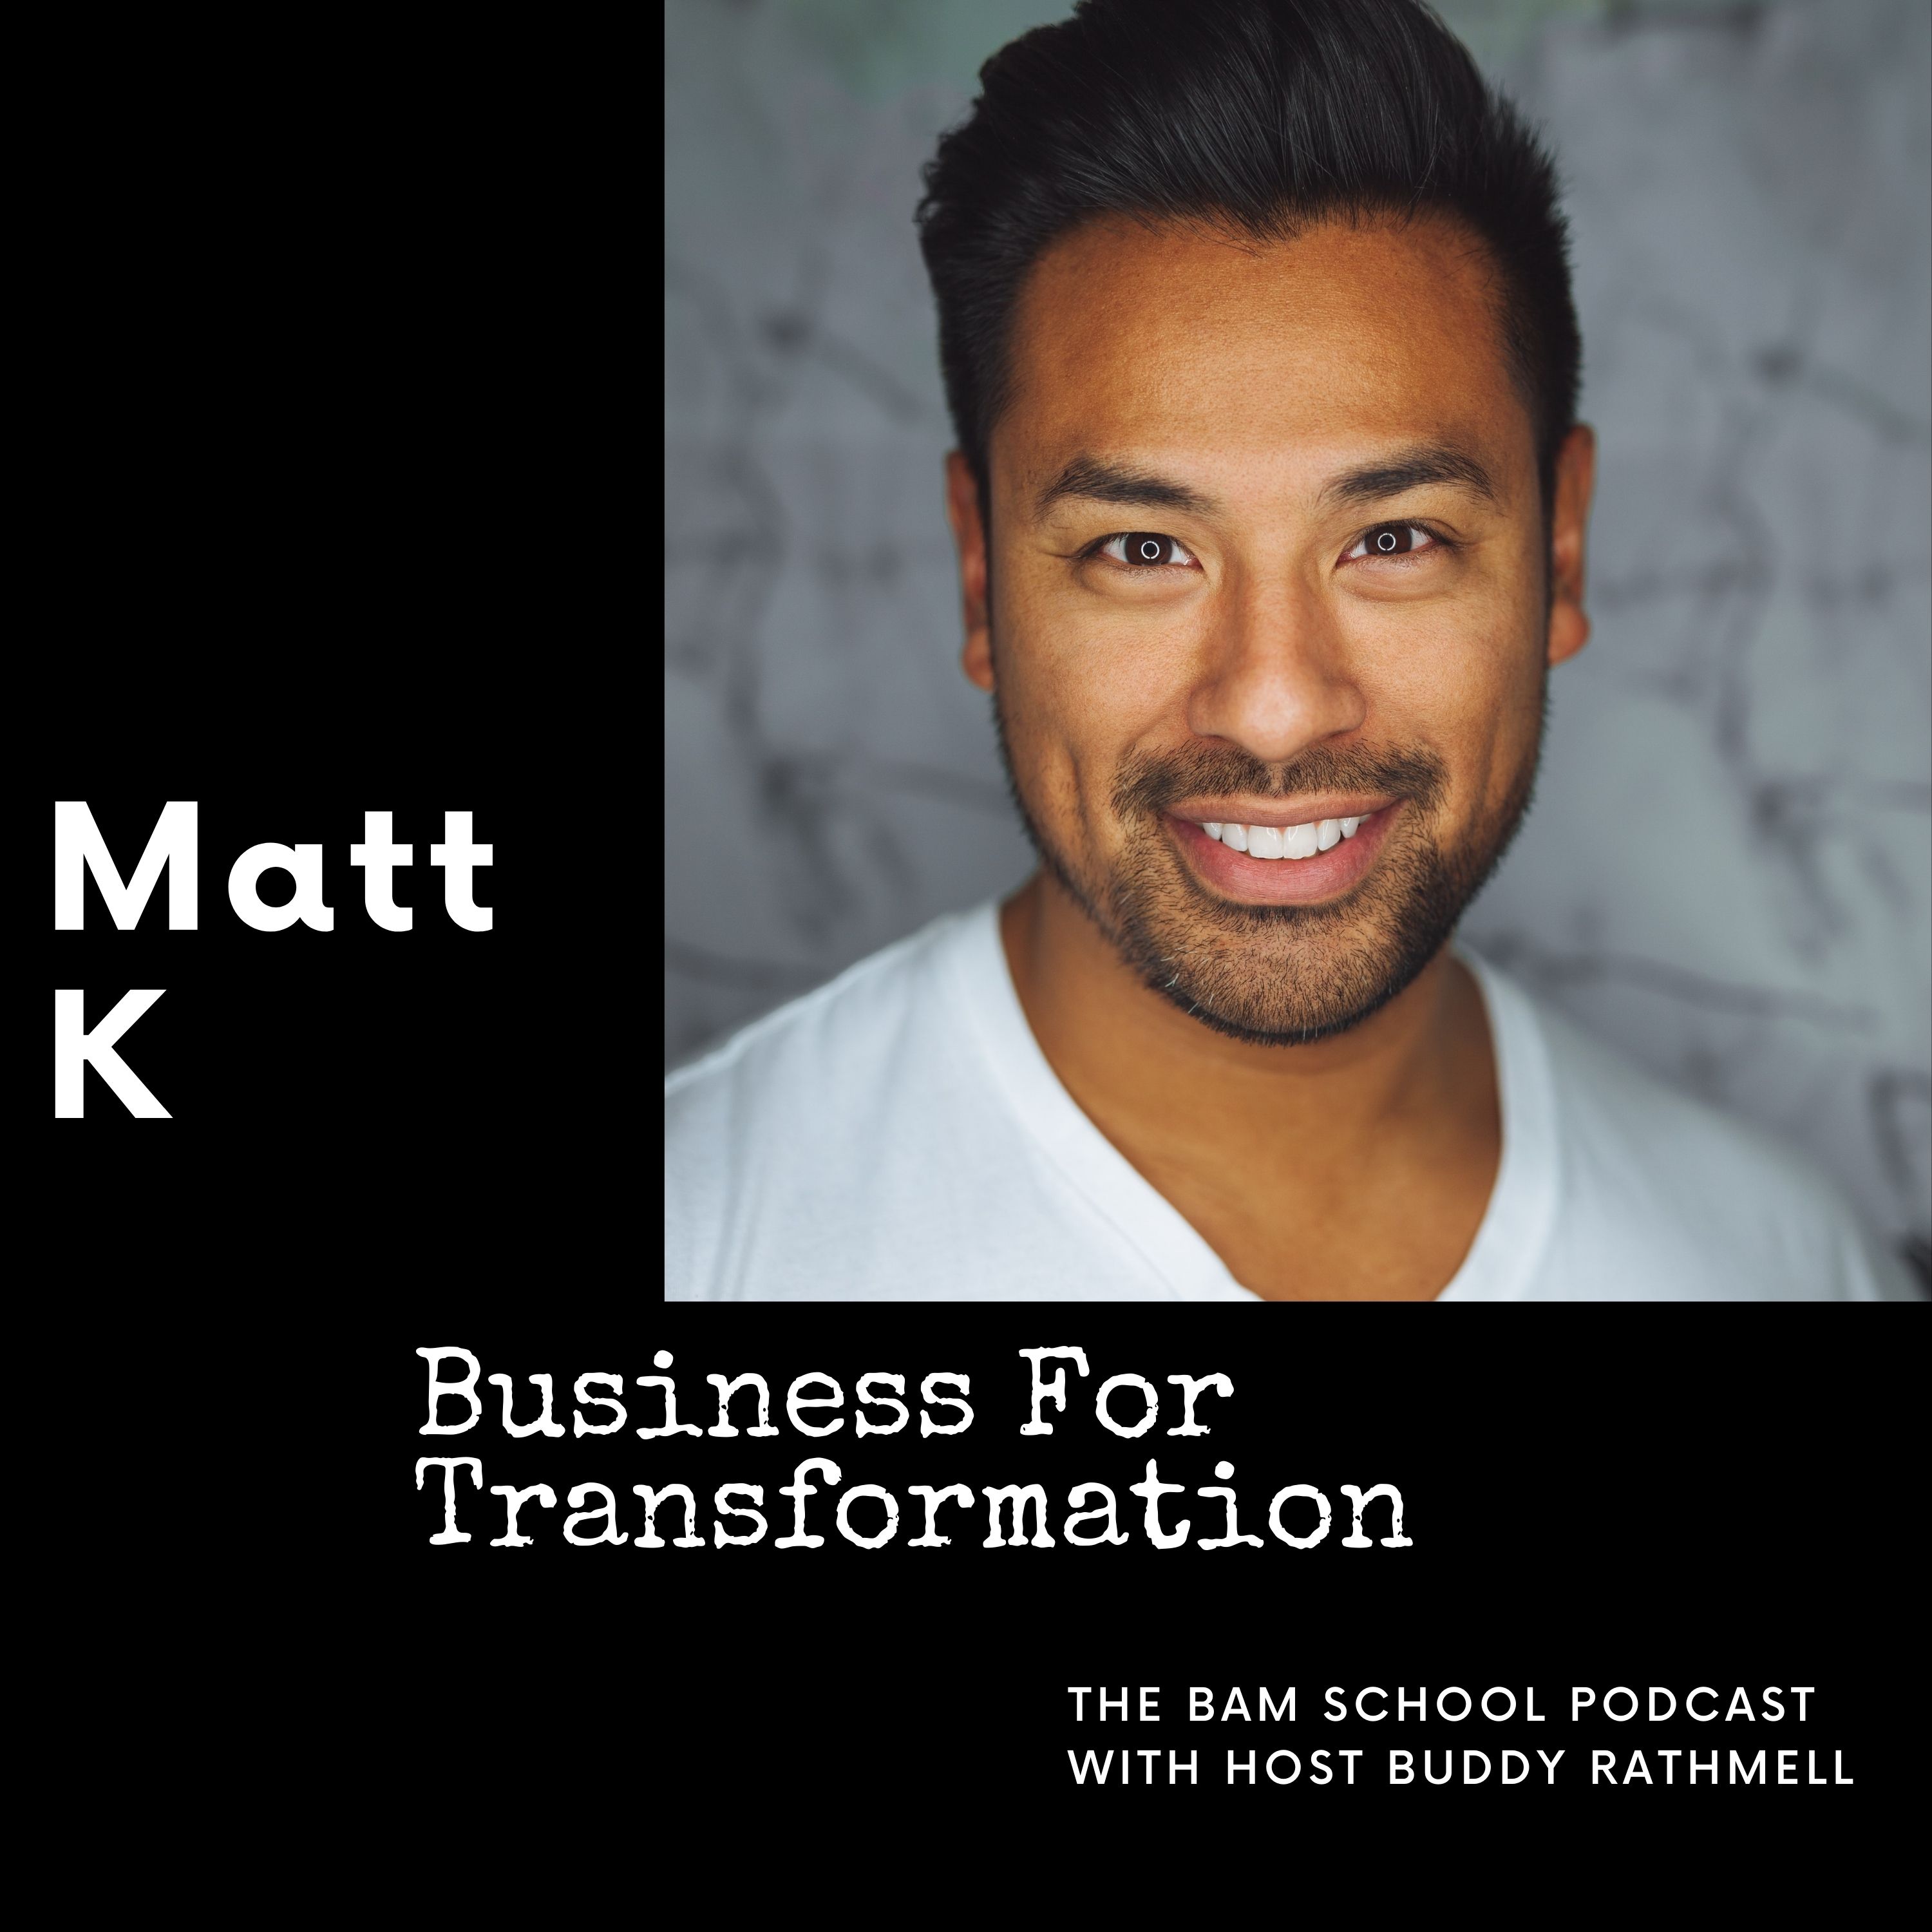 Business for Transformation - Matt K